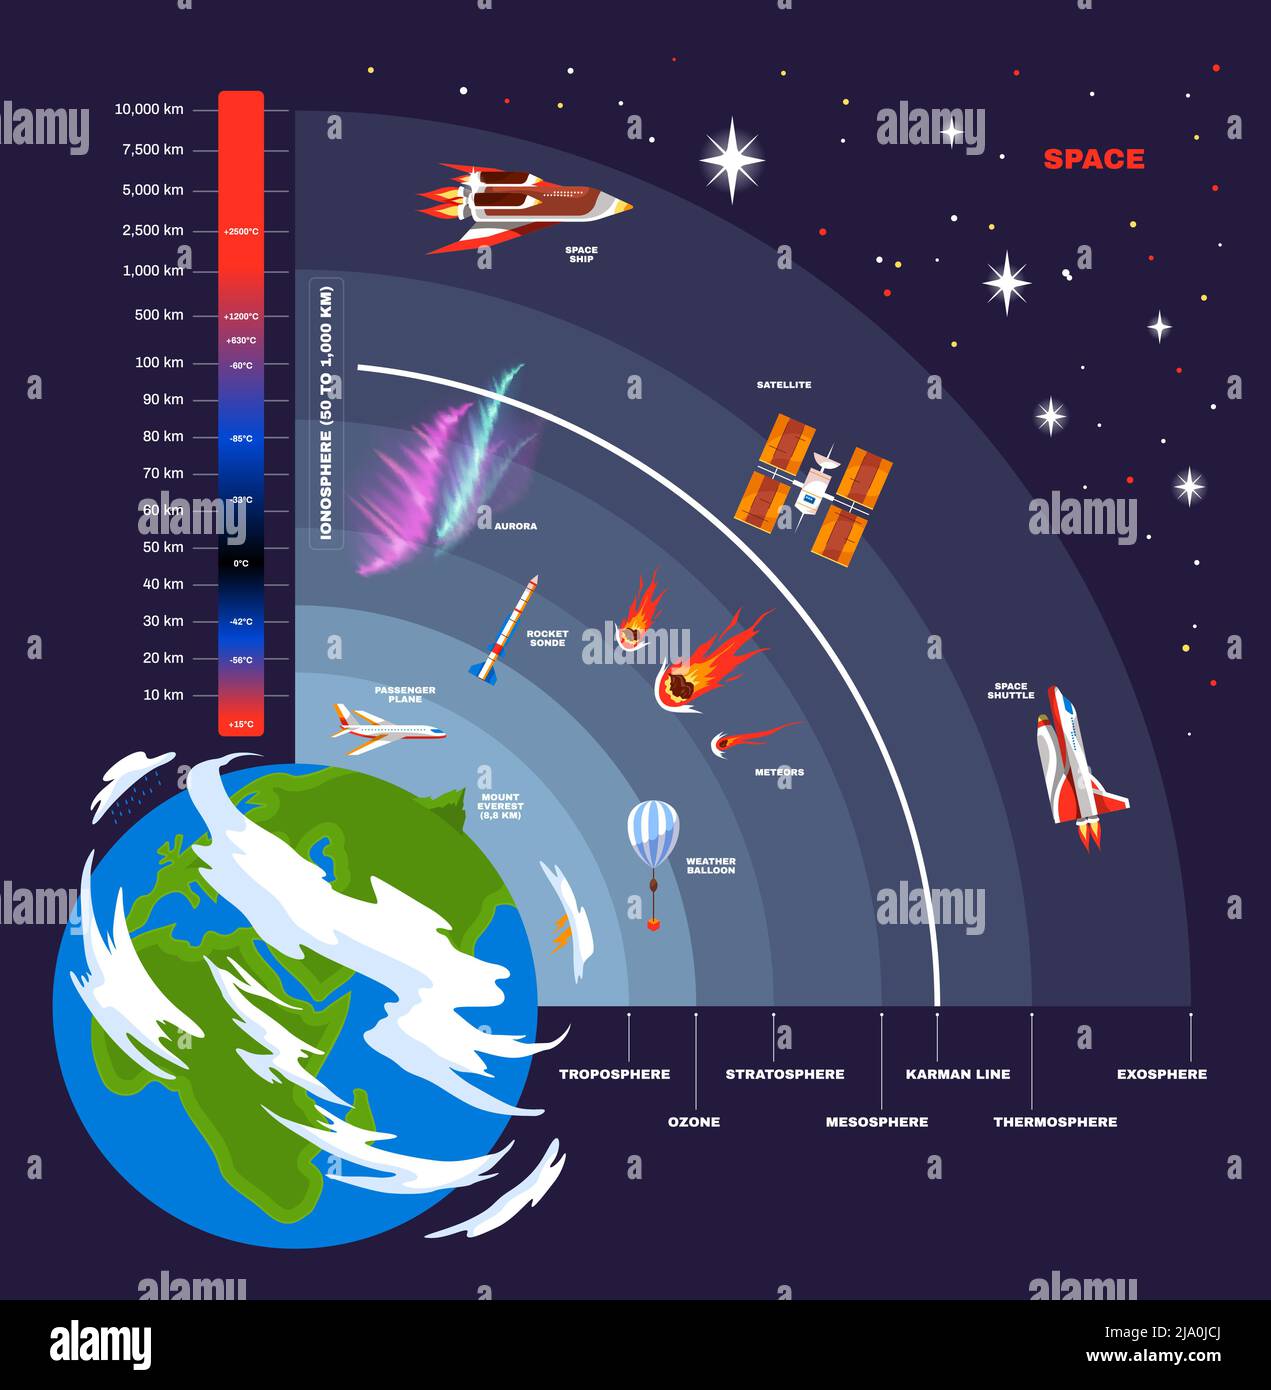 Struttura dell'atmosfera terrestre schema visivo della posizione delle atmosfere e degli oggetti volanti all'interno di ciascuna di esse illustrazione vettoriale Illustrazione Vettoriale